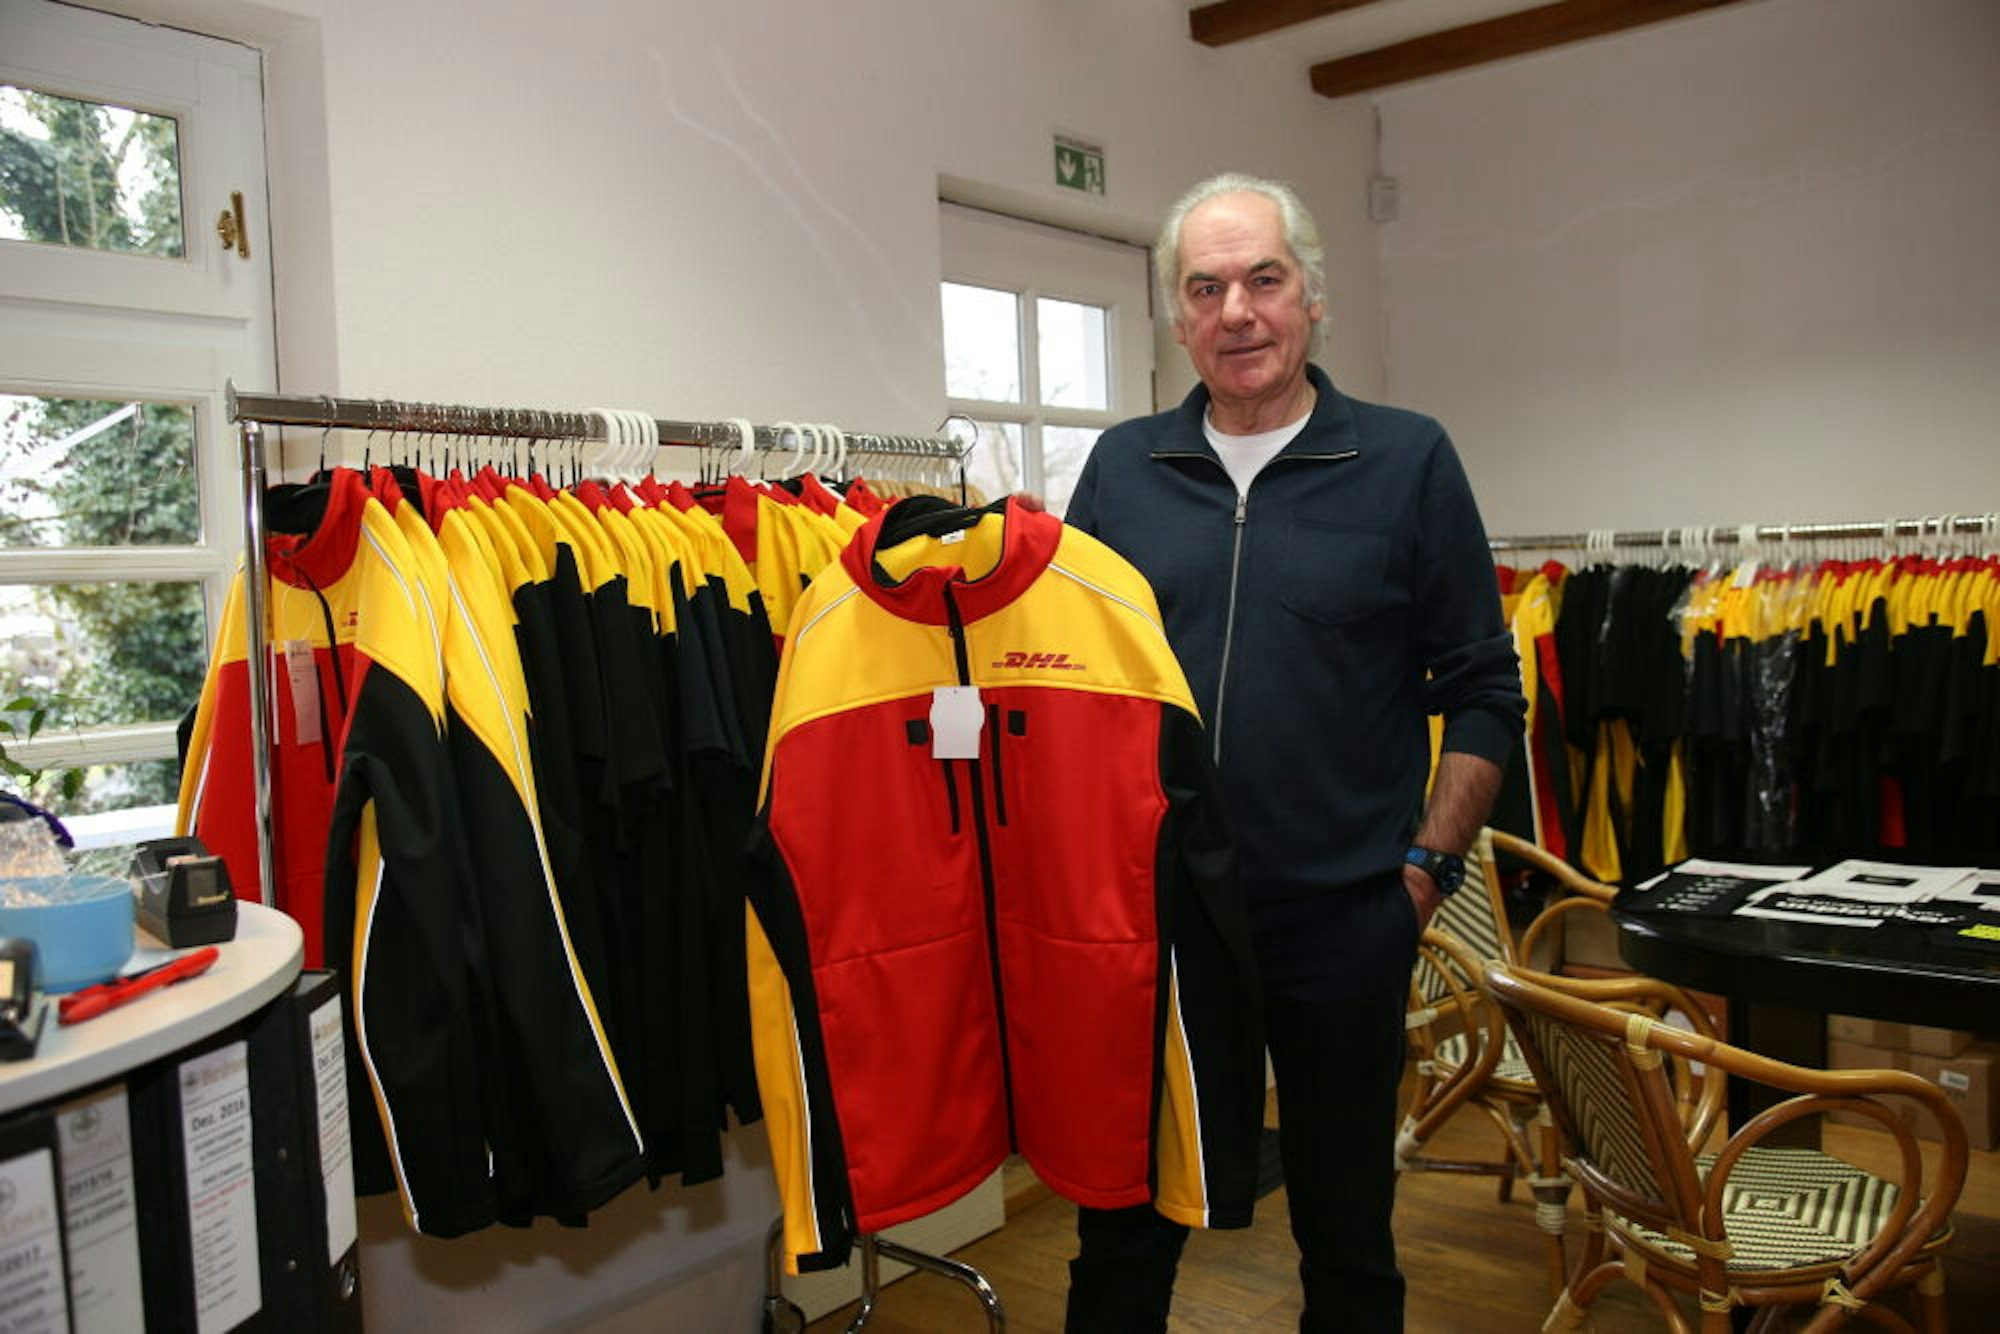 Vater Jürgen zeigt die DHL-Jacken.